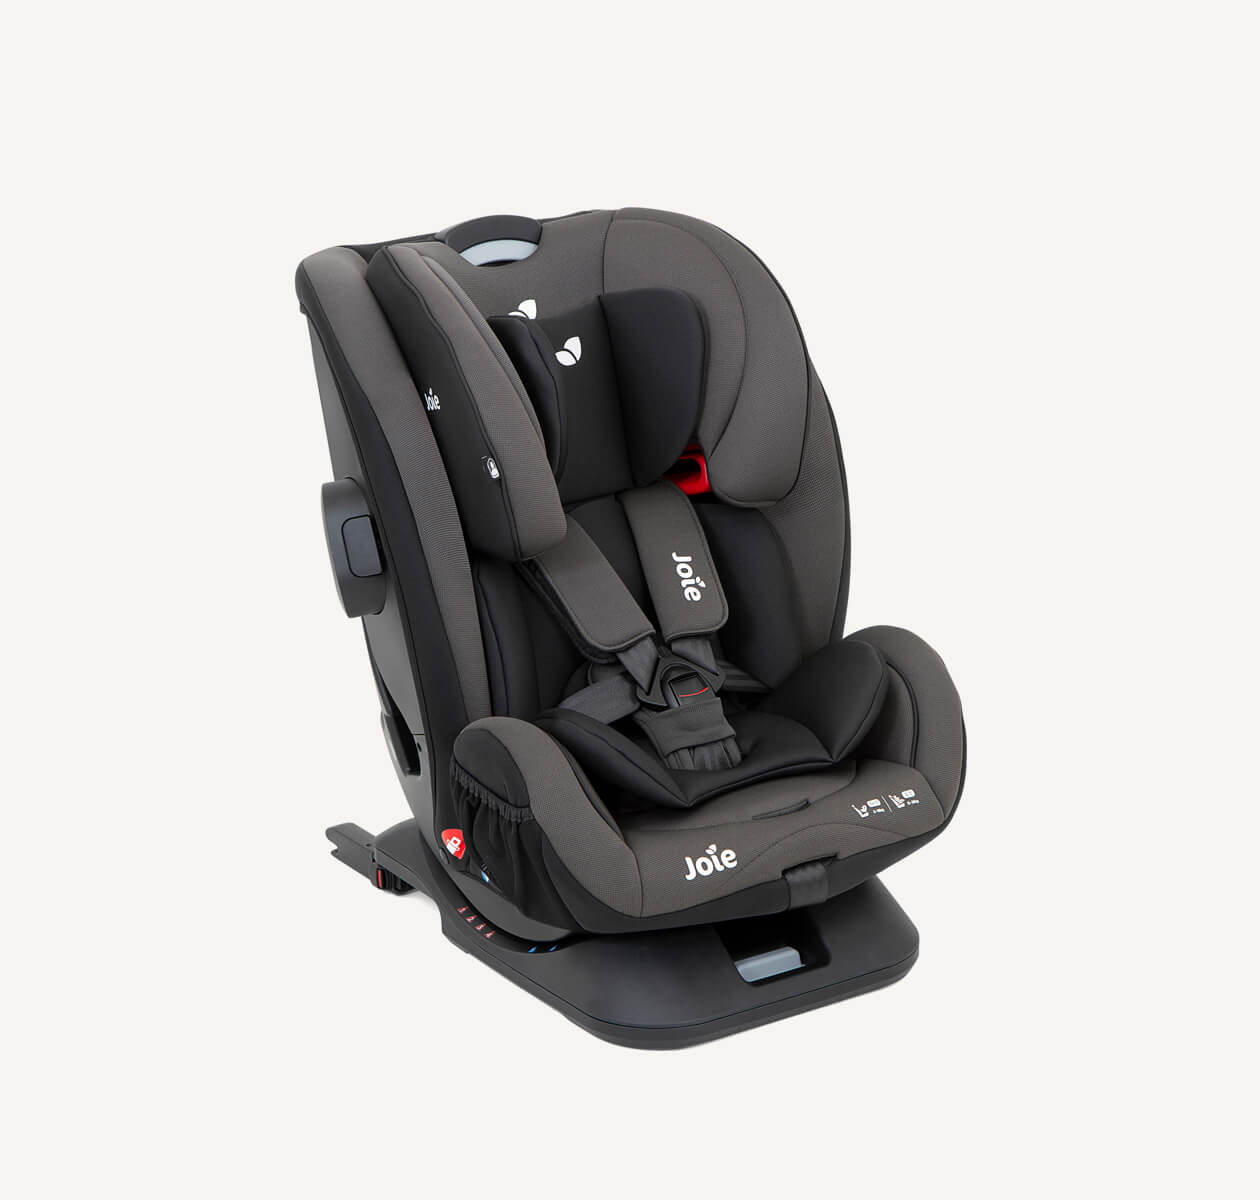 Siège auto Joie verso, coloris gris foncé, positionné en angle droit avec inserts pour bébé inclus.